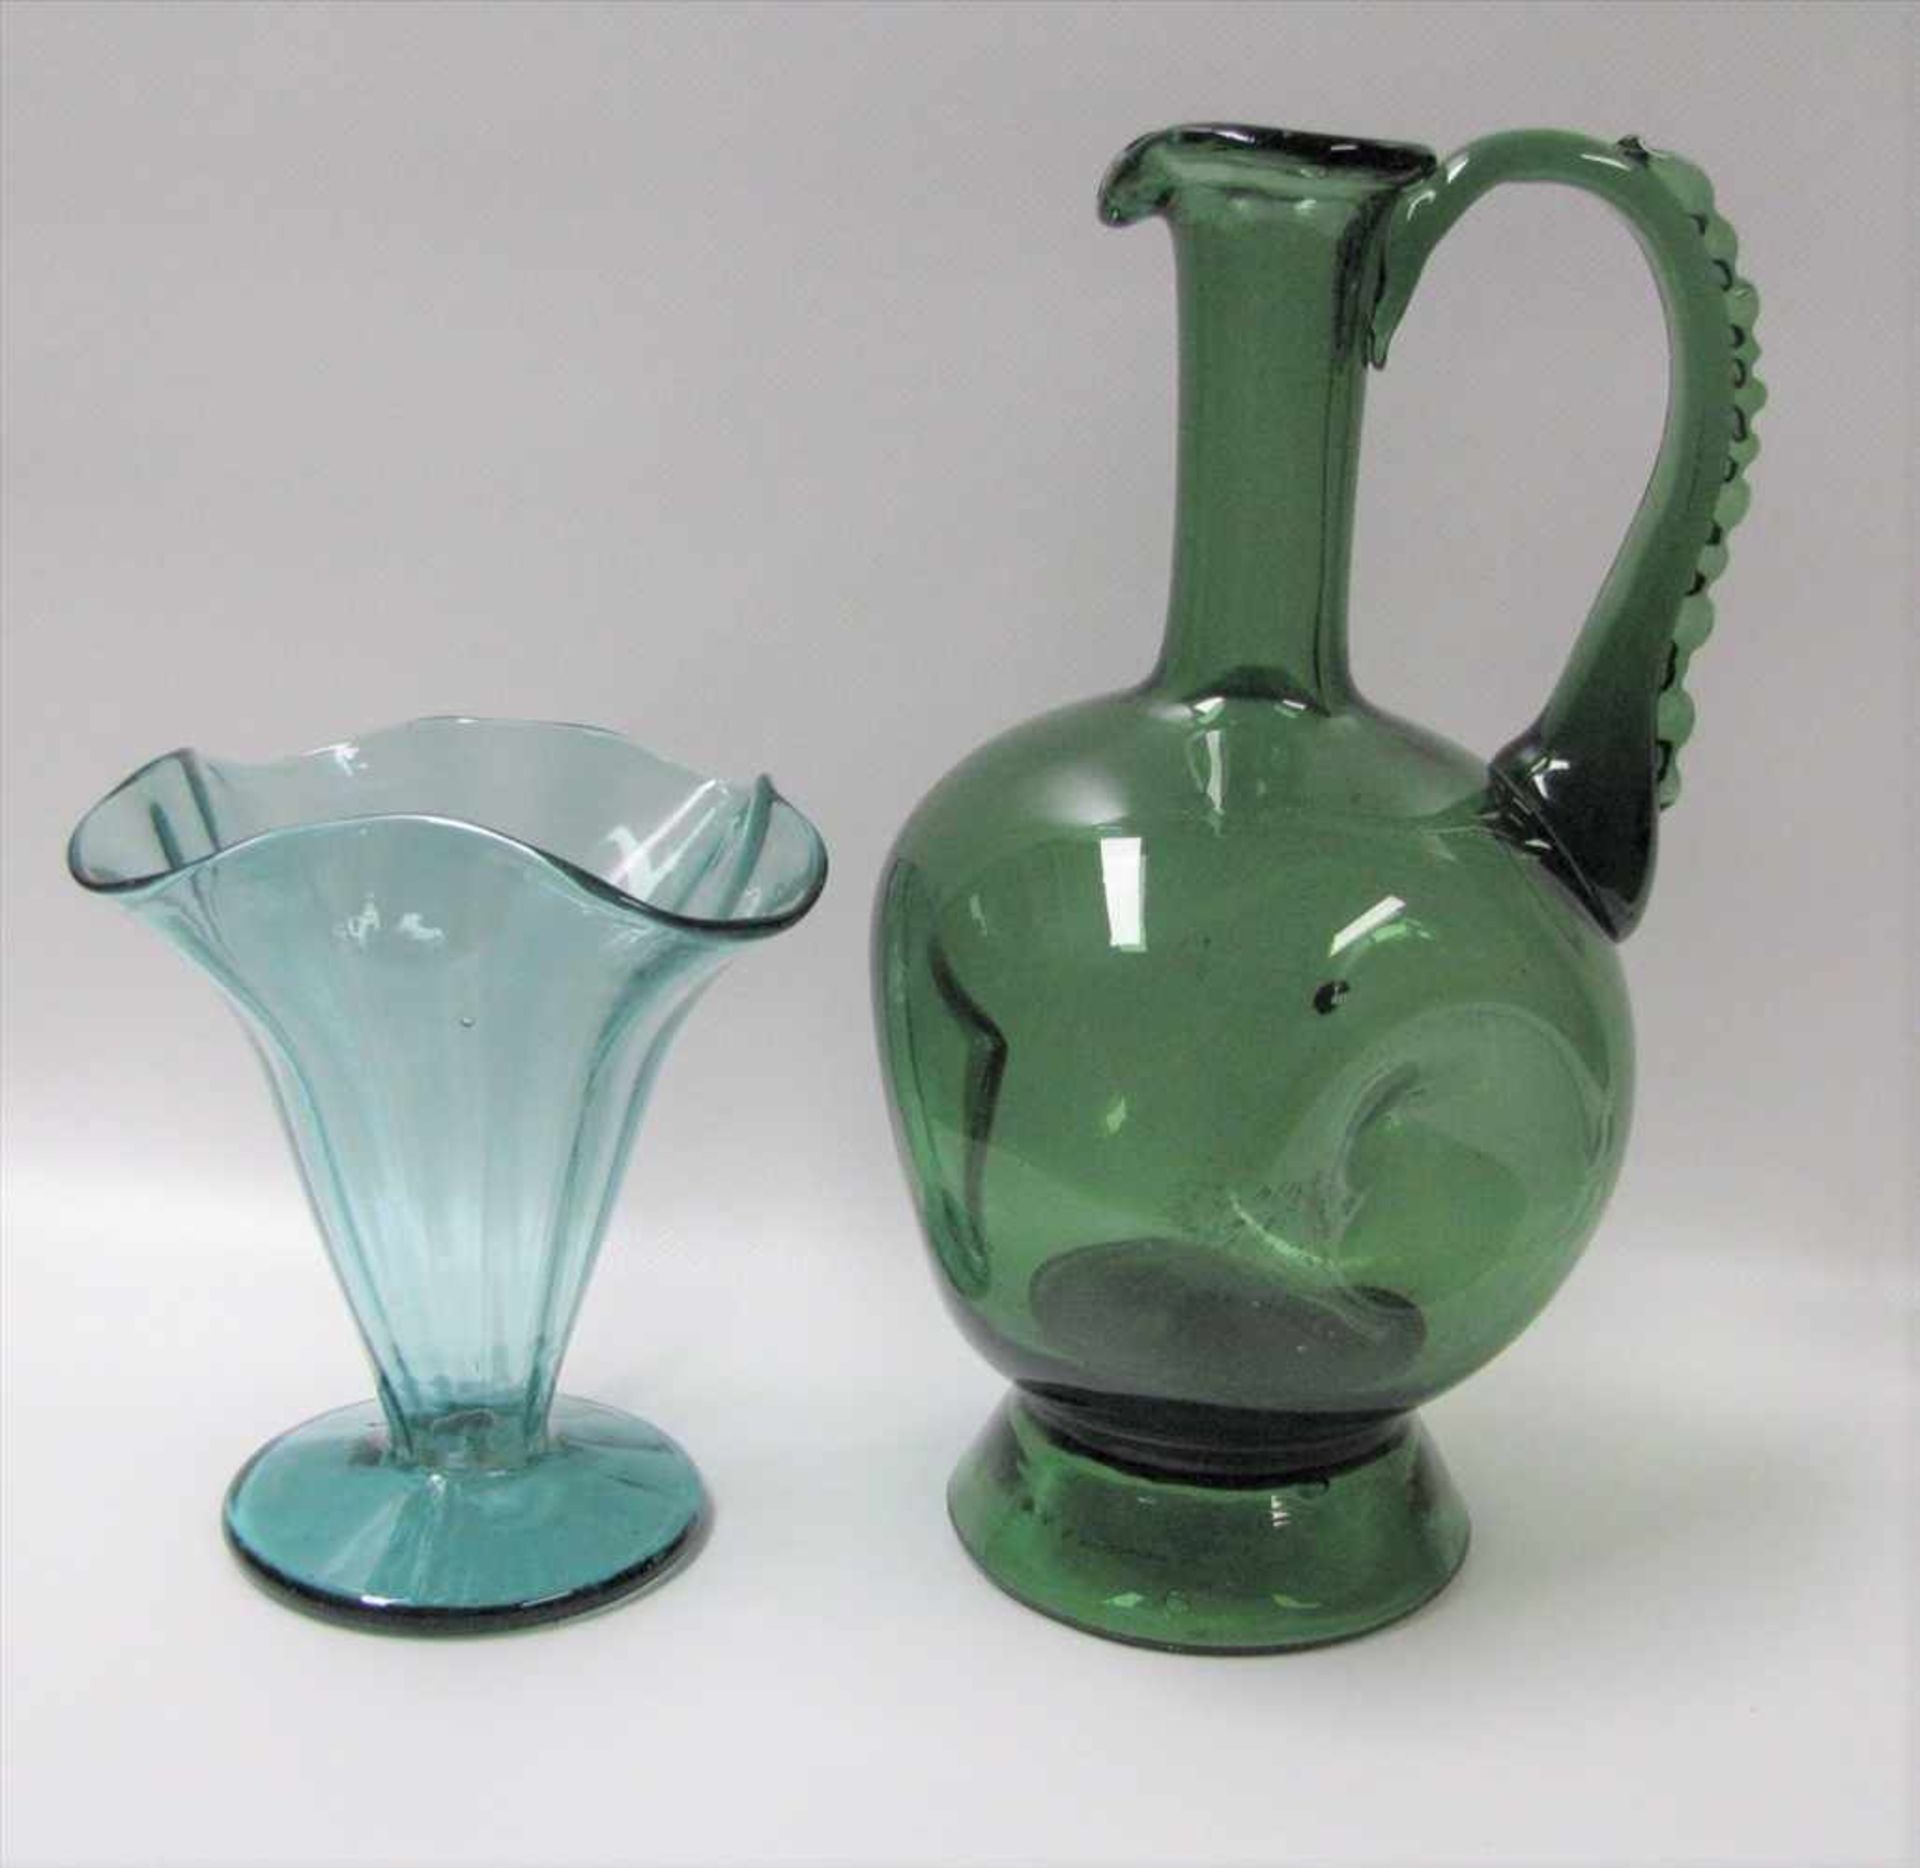 Vase und Henkelkrug, grünliches Glas, Abriss, h 16/29 cm.